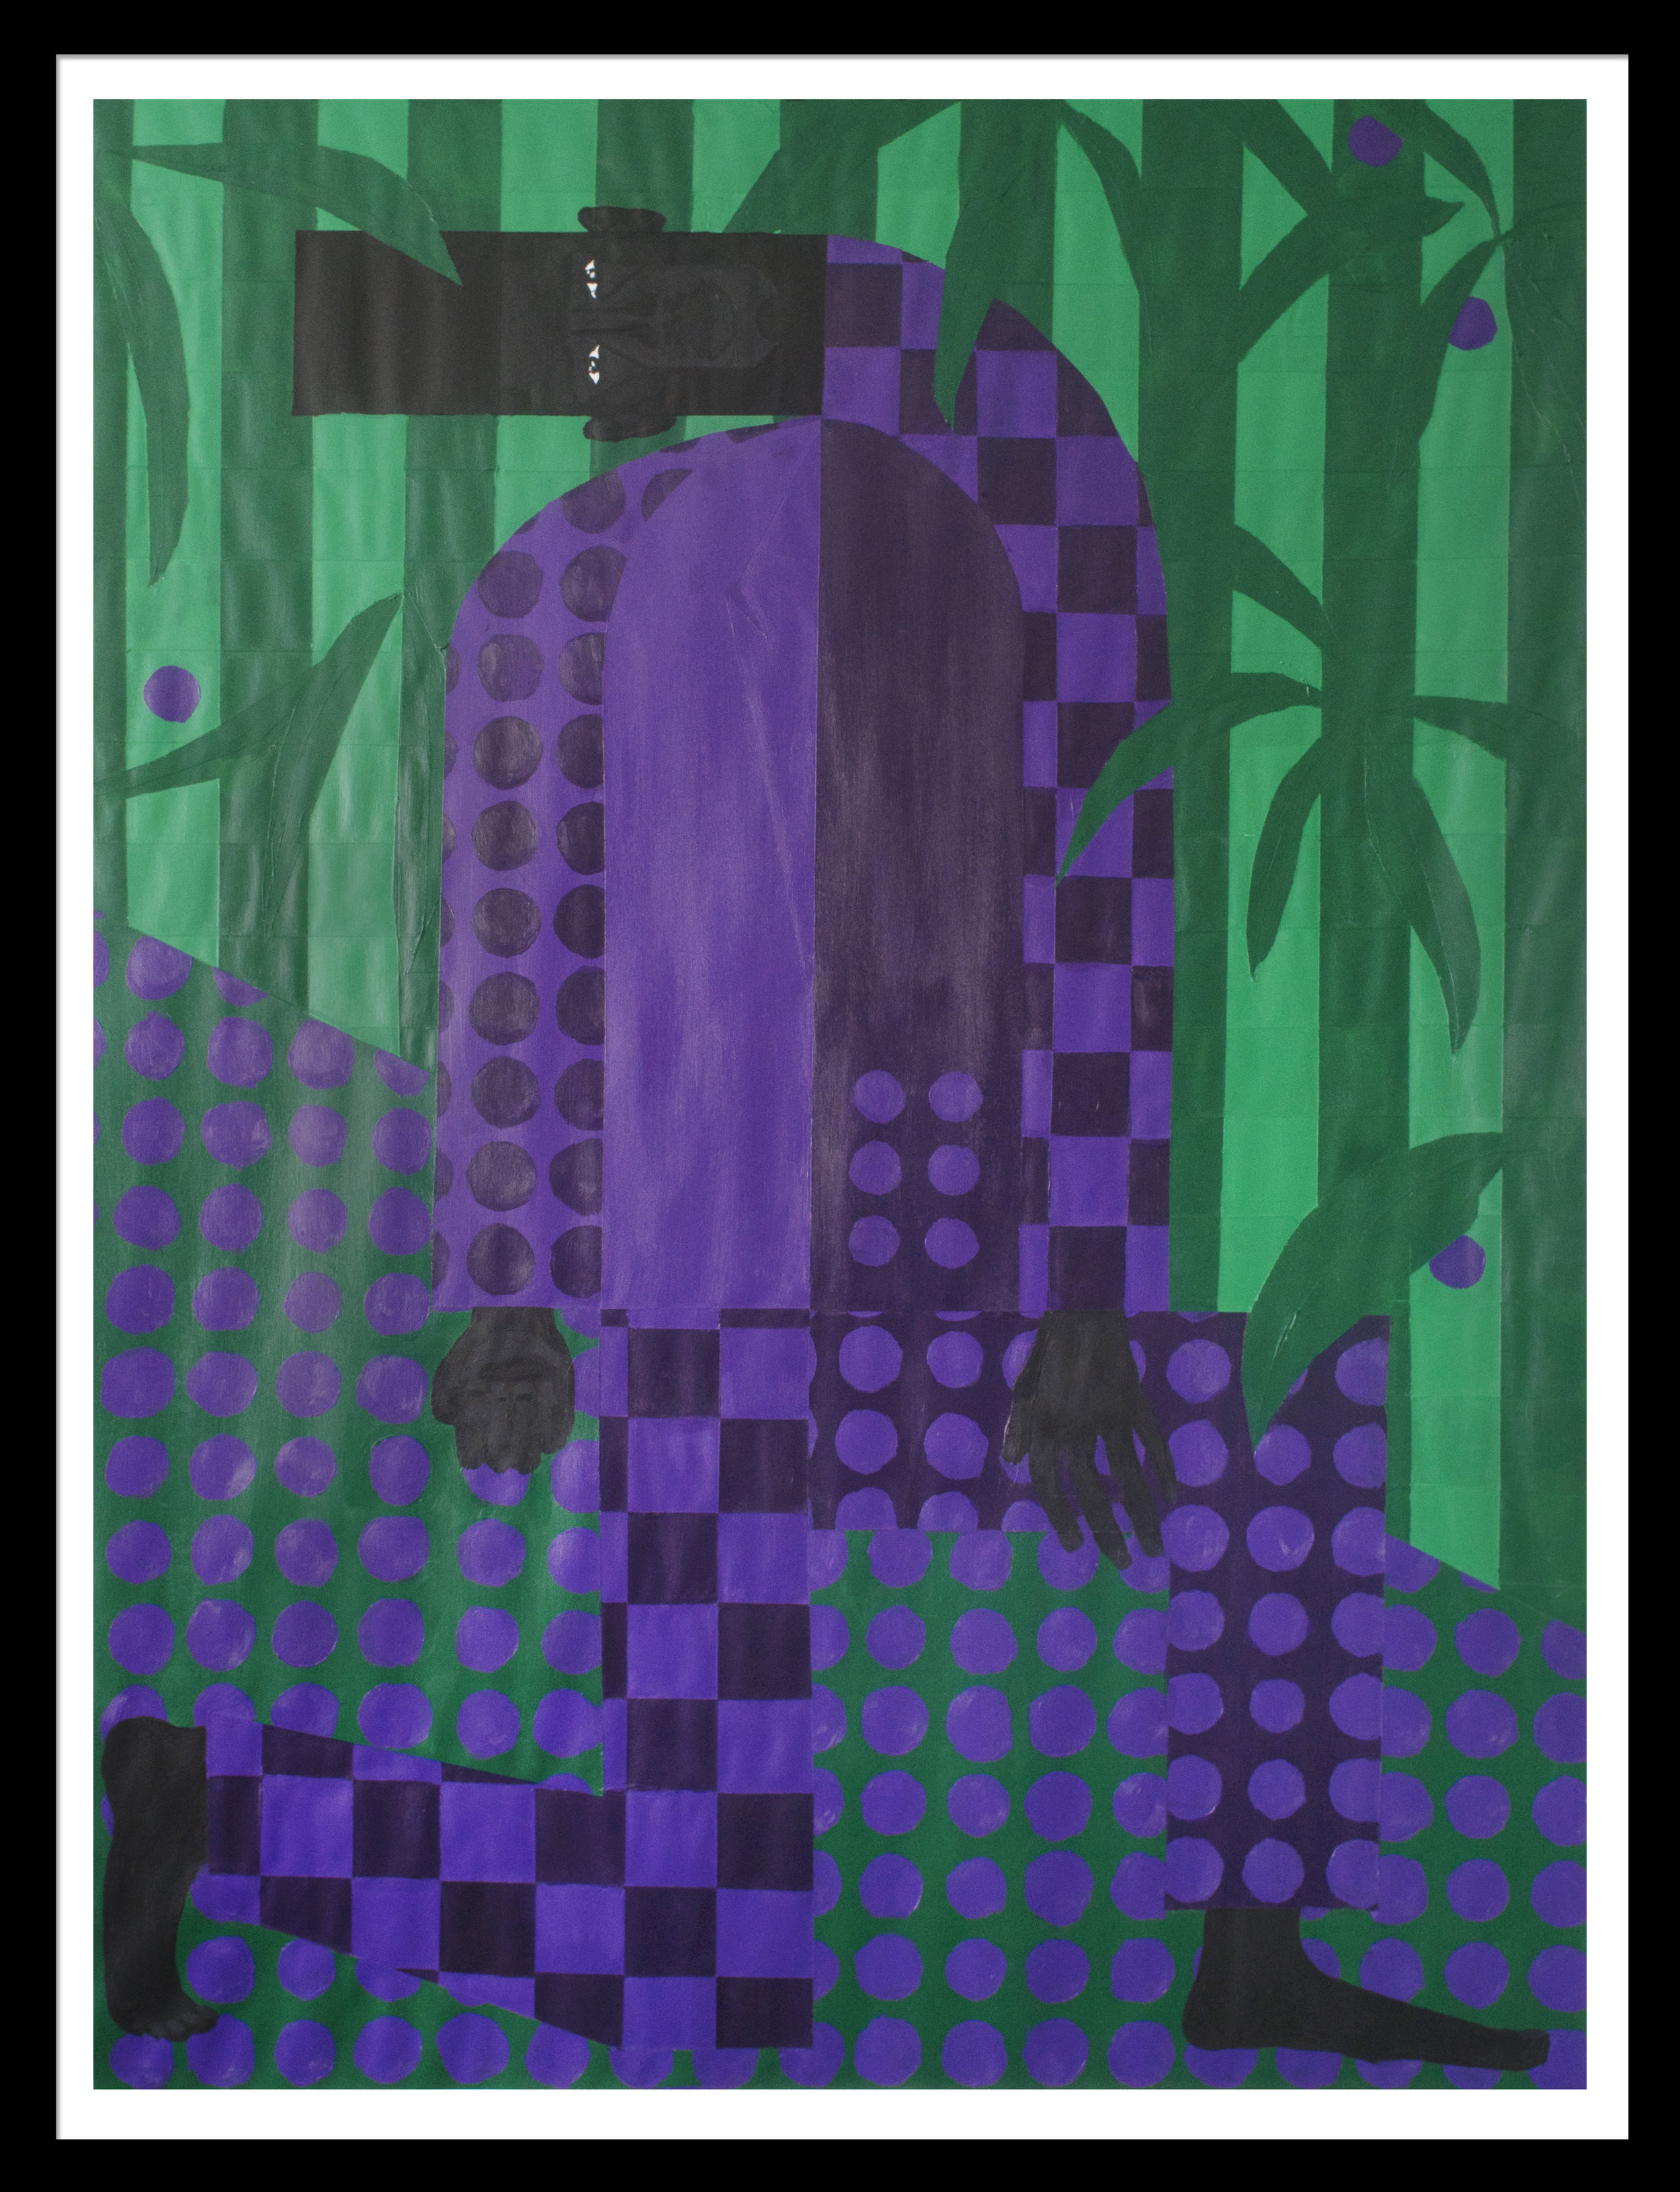 Man in the Violet Dreamscape No. 4